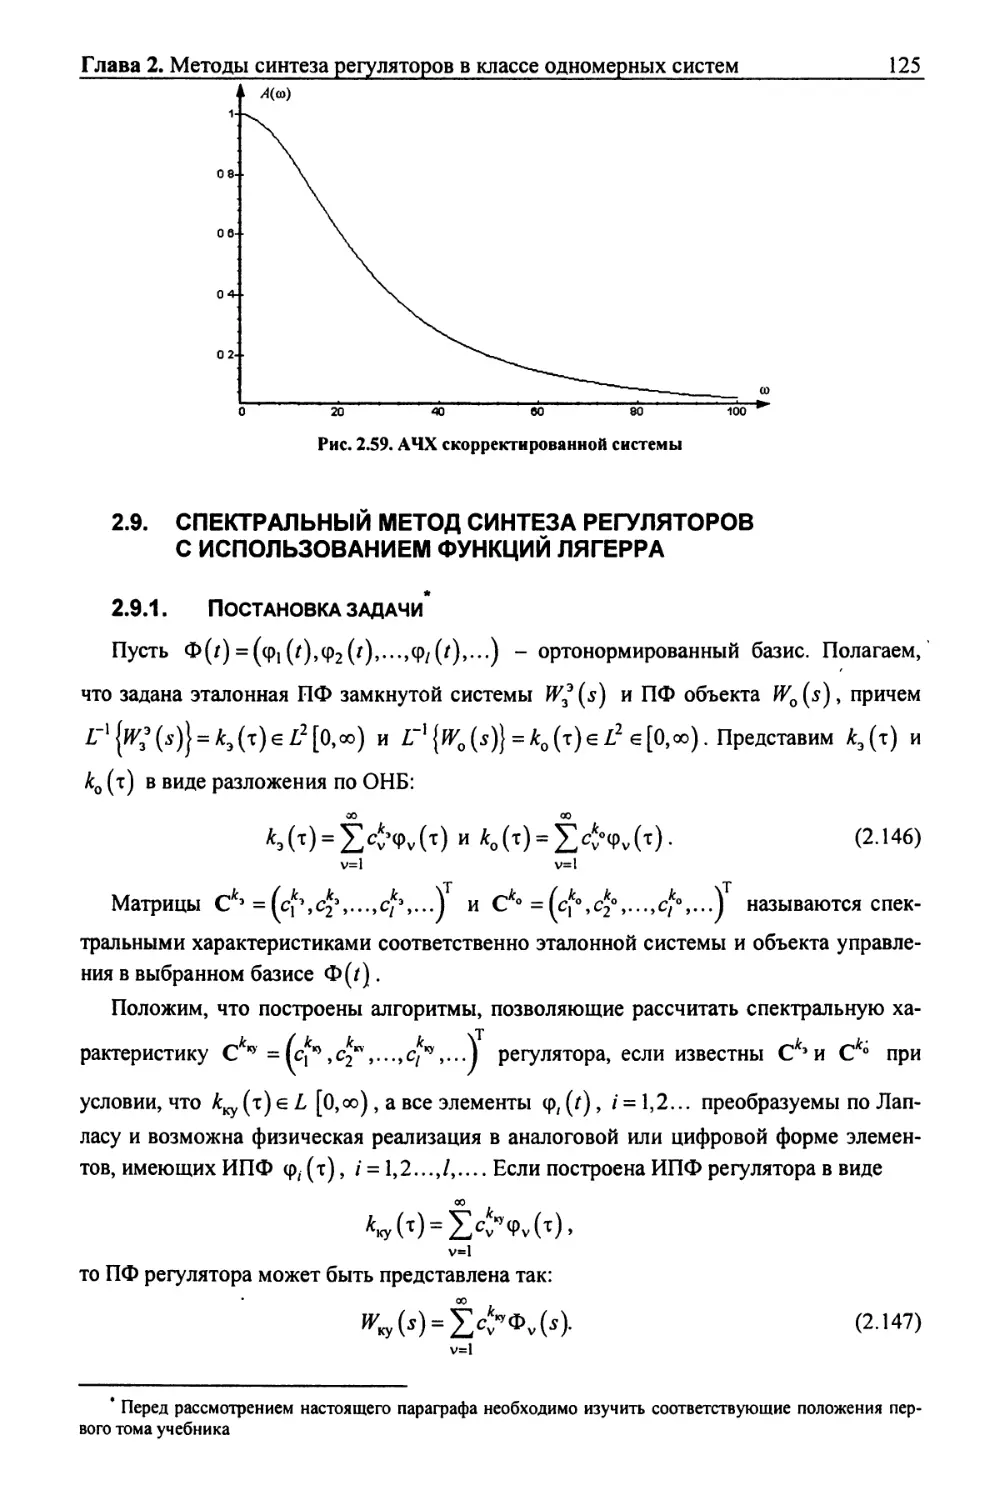 2.9. Спектральный метод синтеза регуляторов с использованием функций лягерра